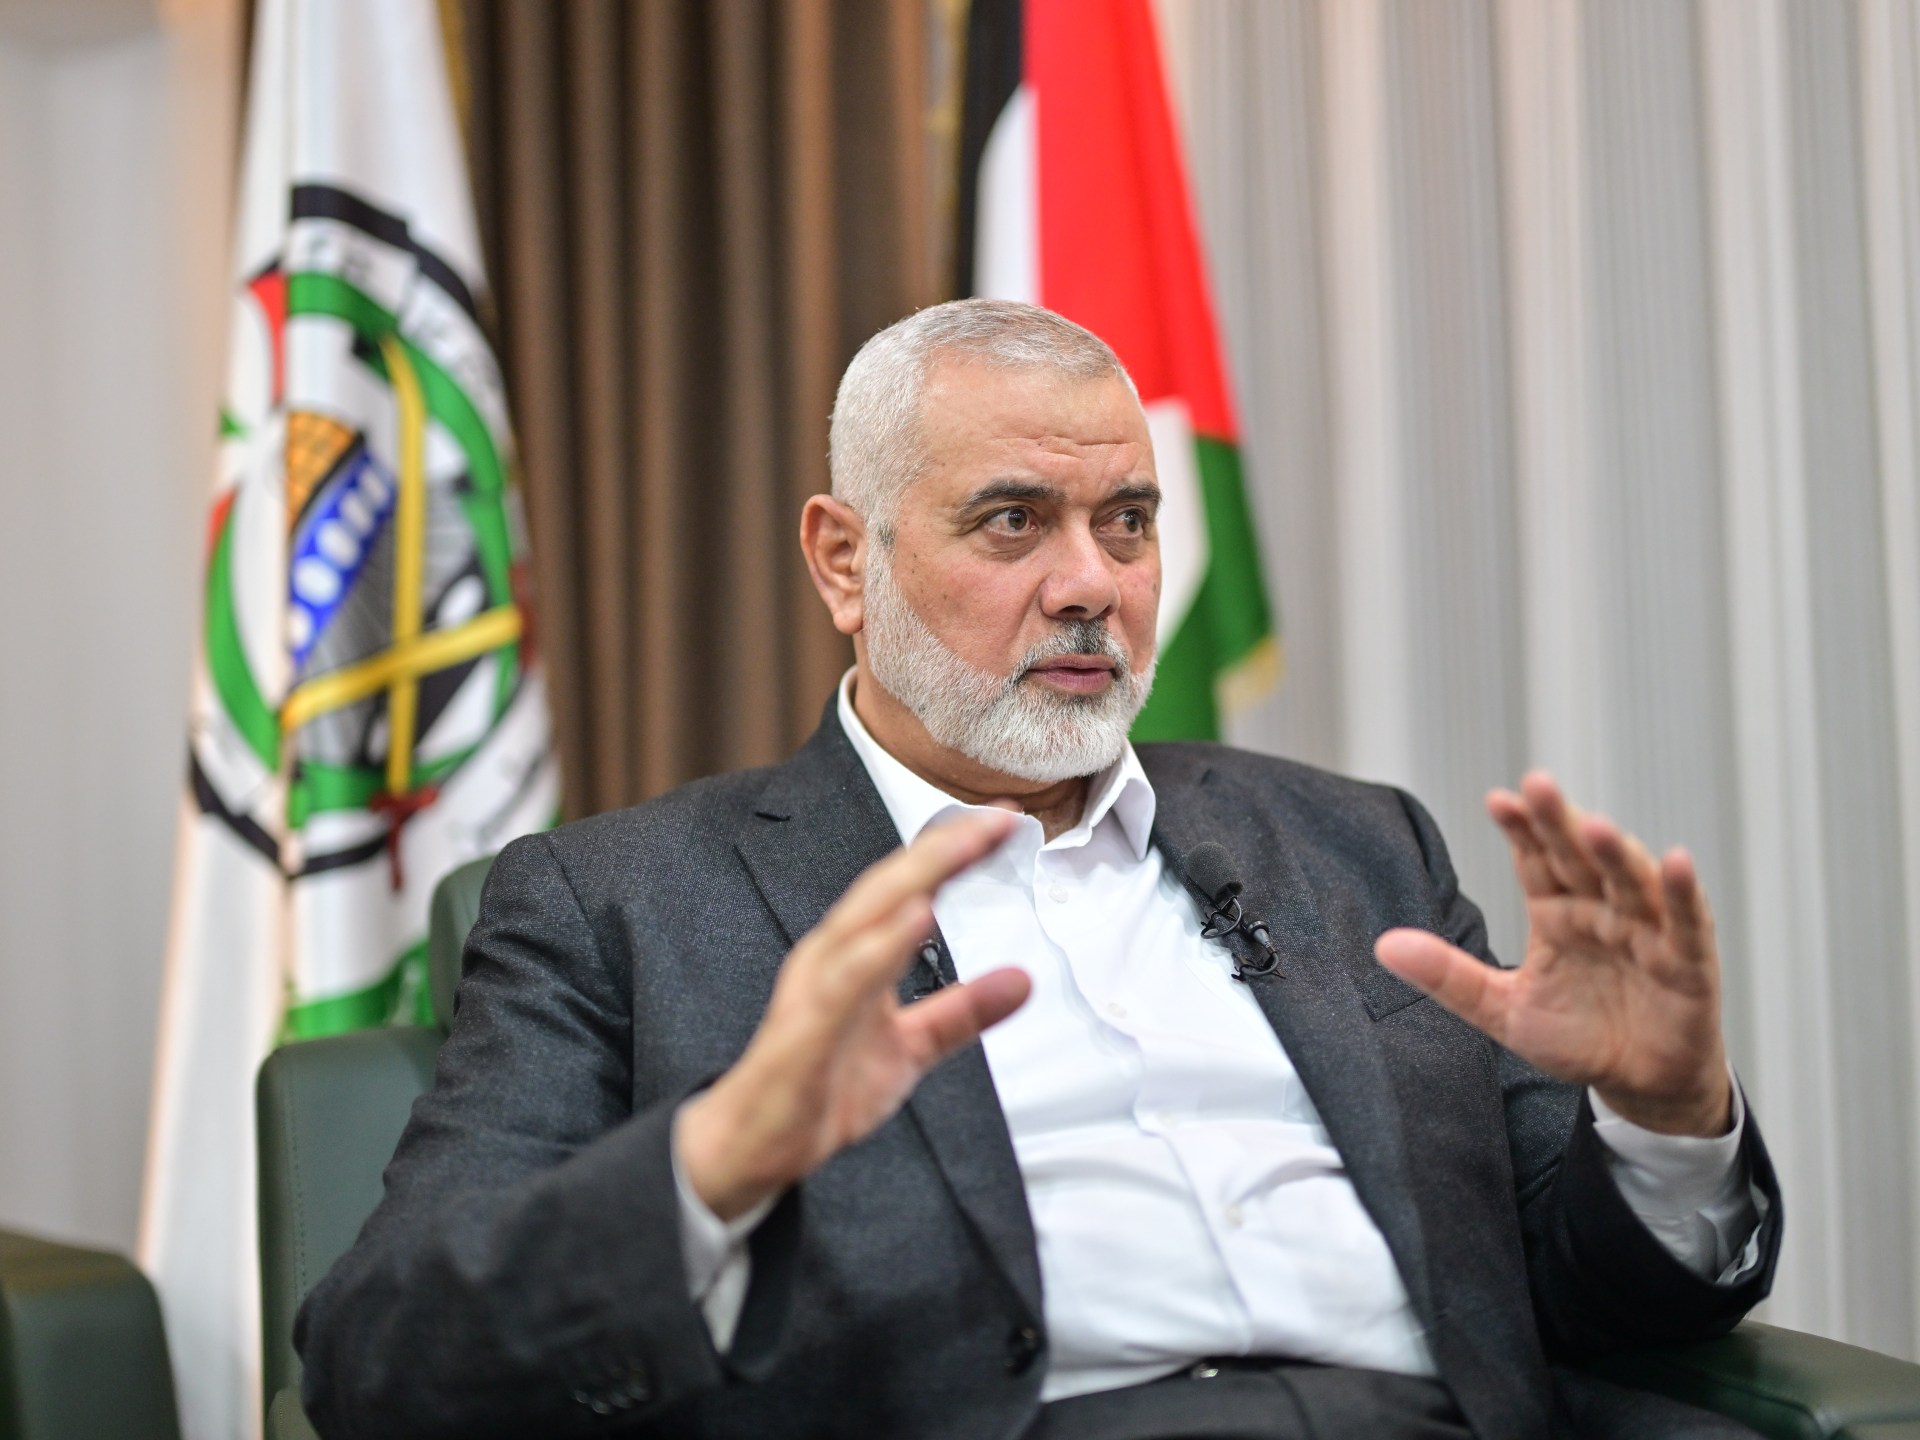 حماس لا تزال تدرس المقترح الأميركي وإسرائيل تتوقع الرد السبت | أخبار – البوكس نيوز